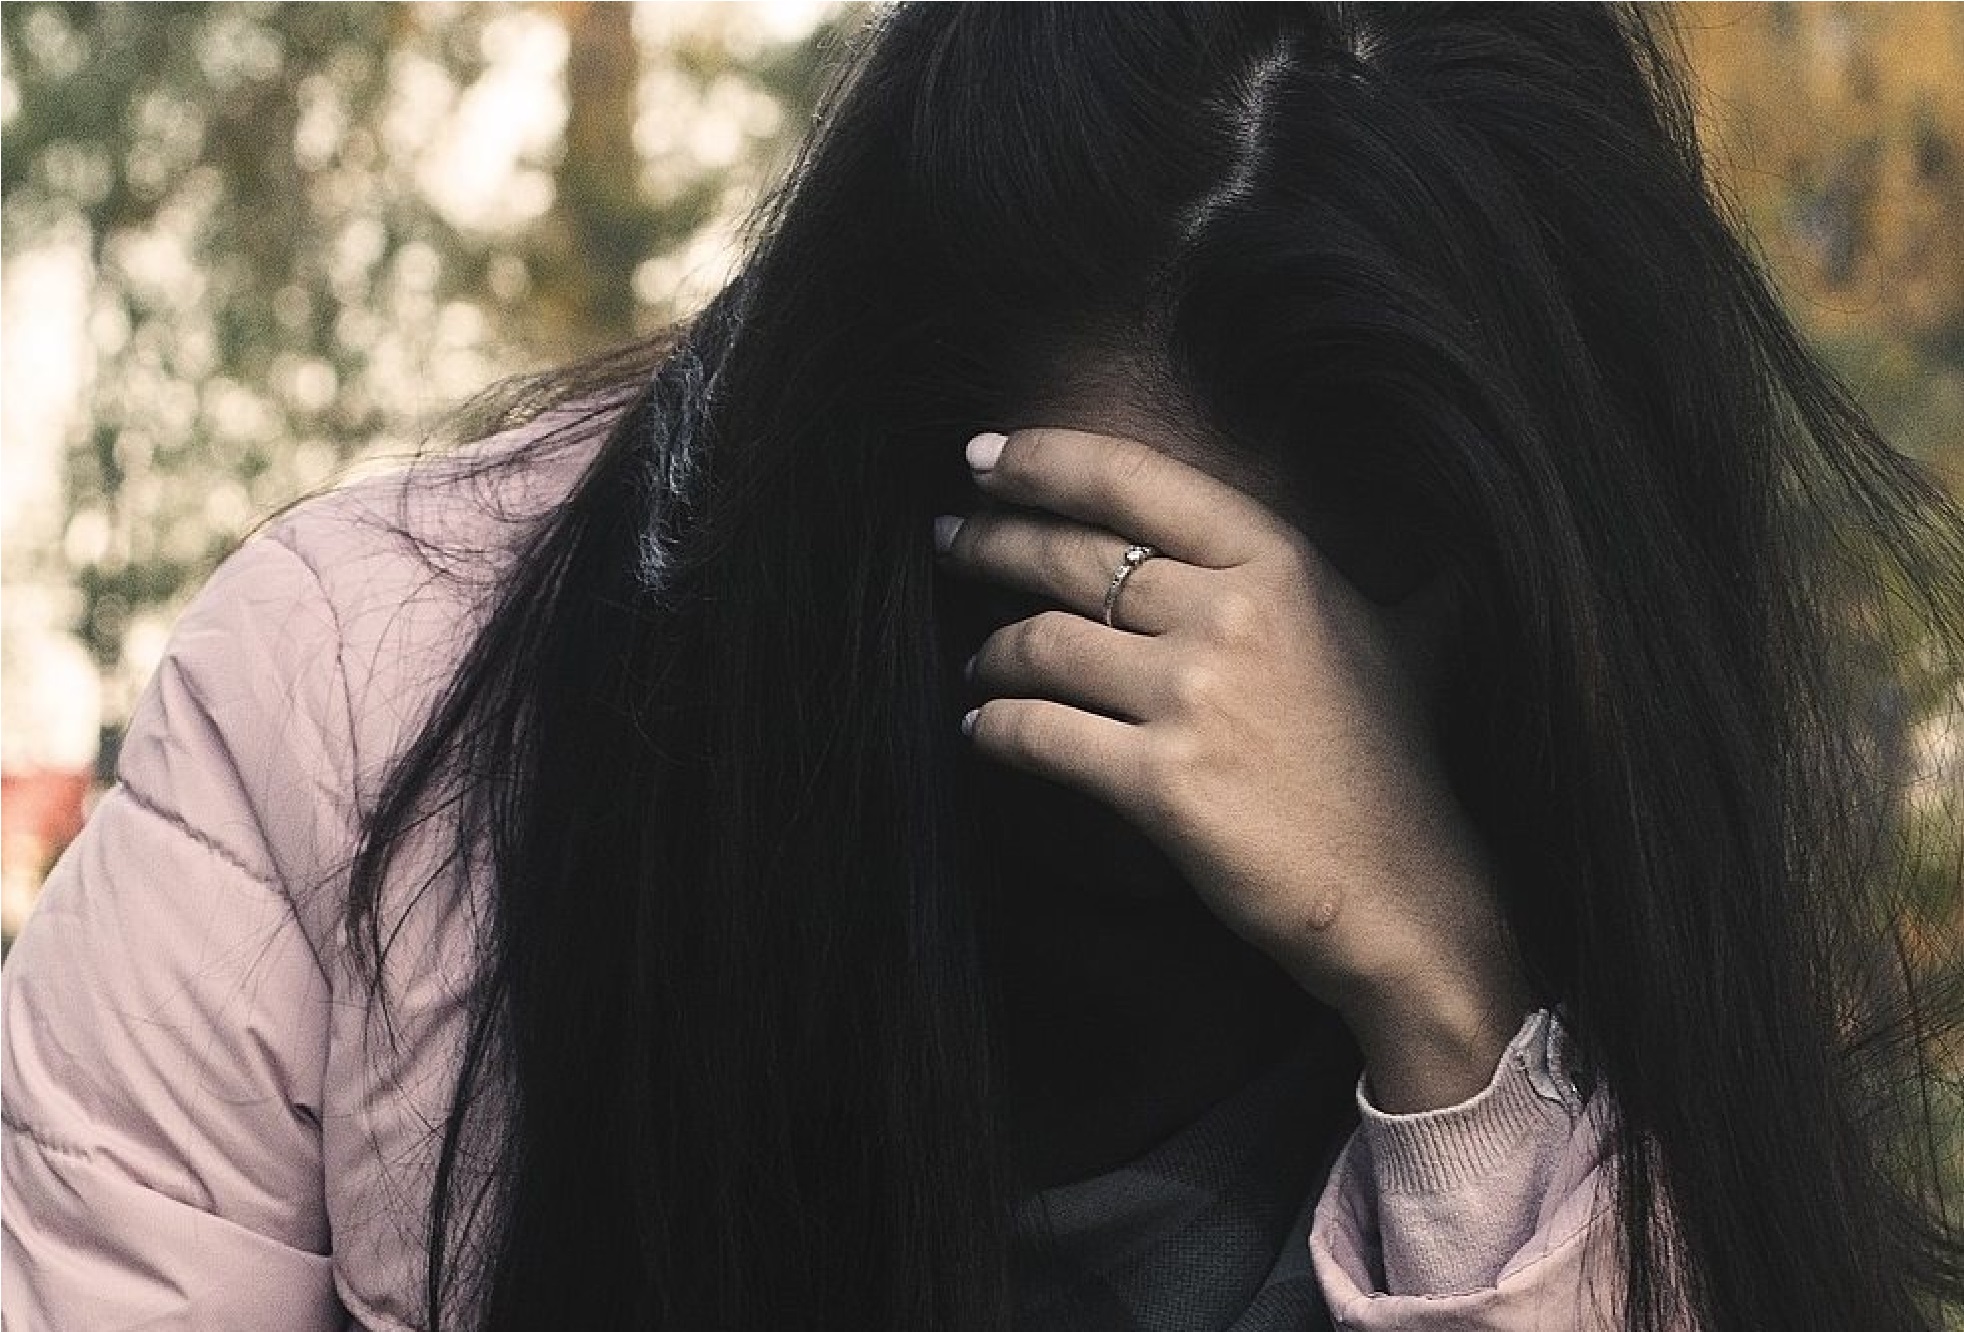 הותקפה על ידי בעלה. אילוסטרציה: Лечение Наркомании from Pixabay